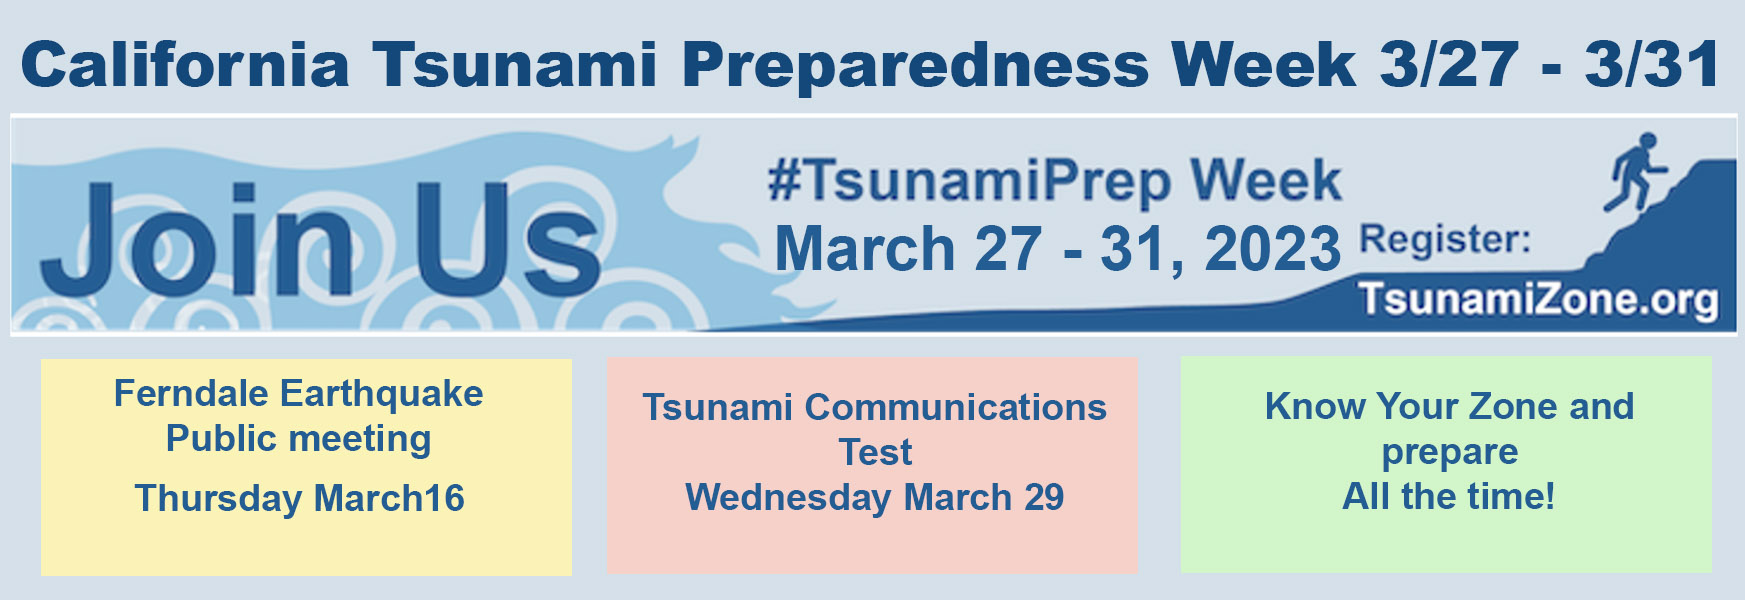 Tsunami Preparedness Week Details